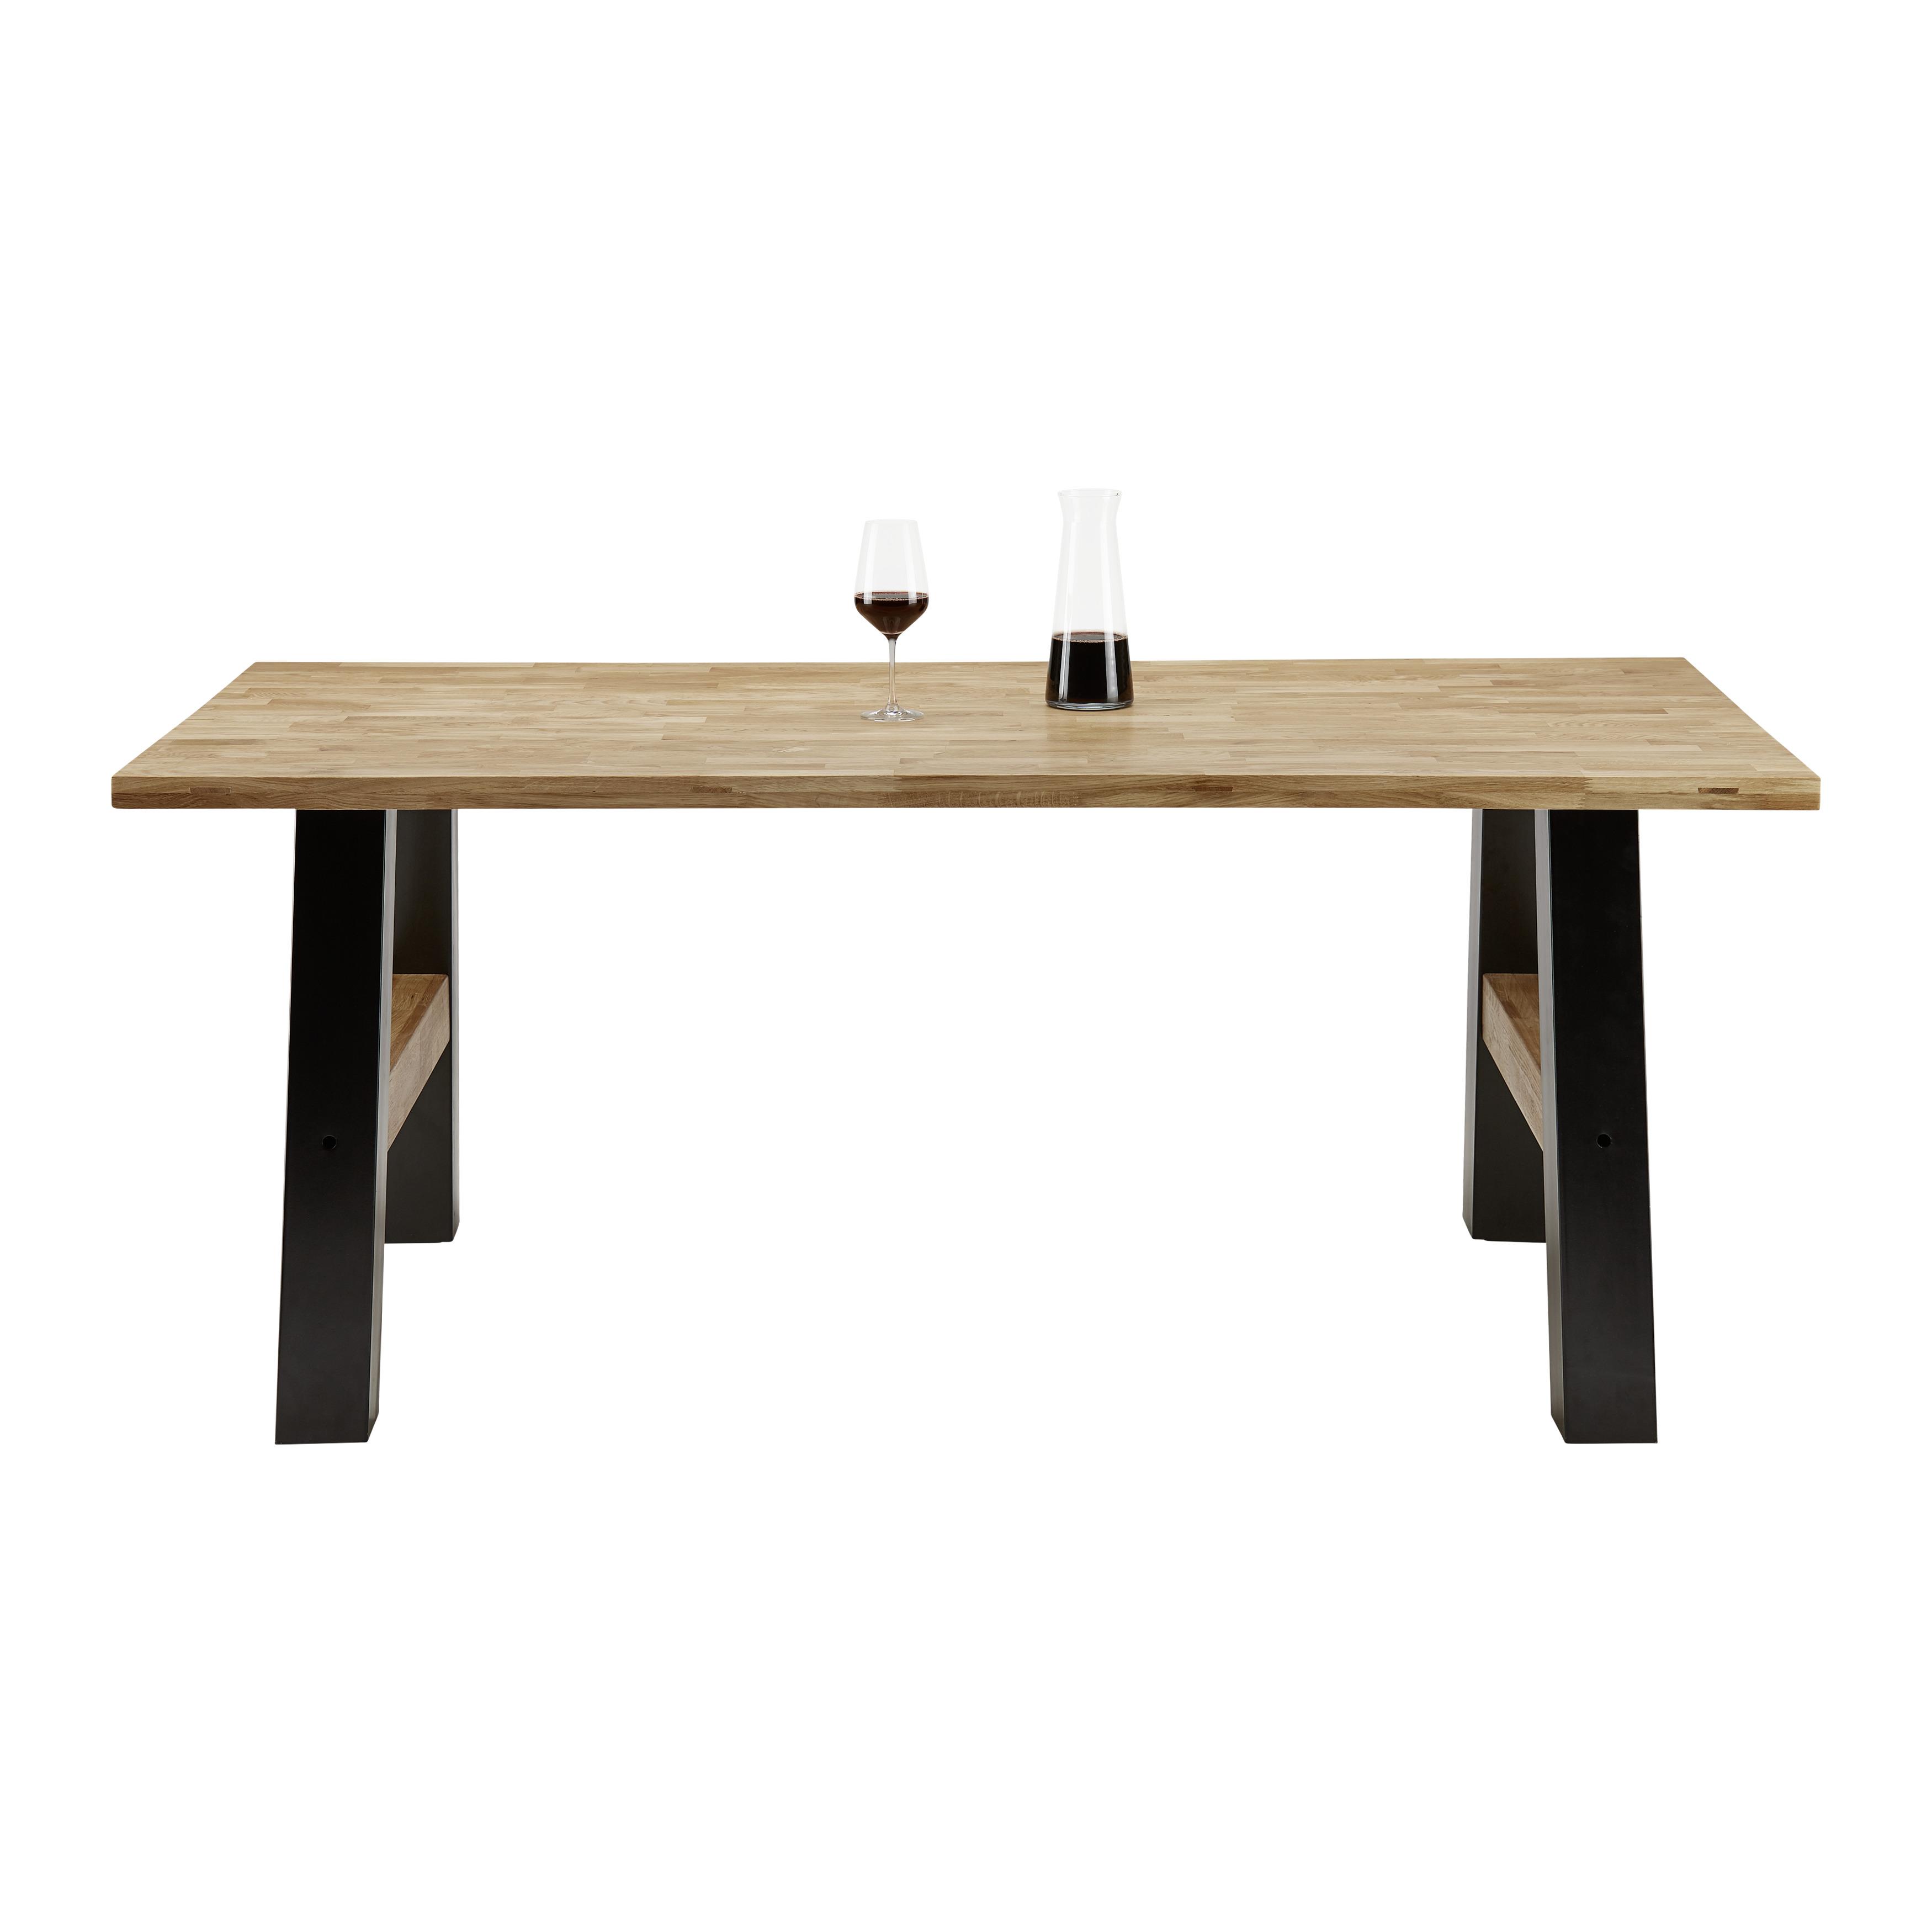 Jídelní Stůl Oliver 180x90 Cm - černá/barvy dubu, Moderní, kov/dřevo (180/90/76cm) - Modern Living